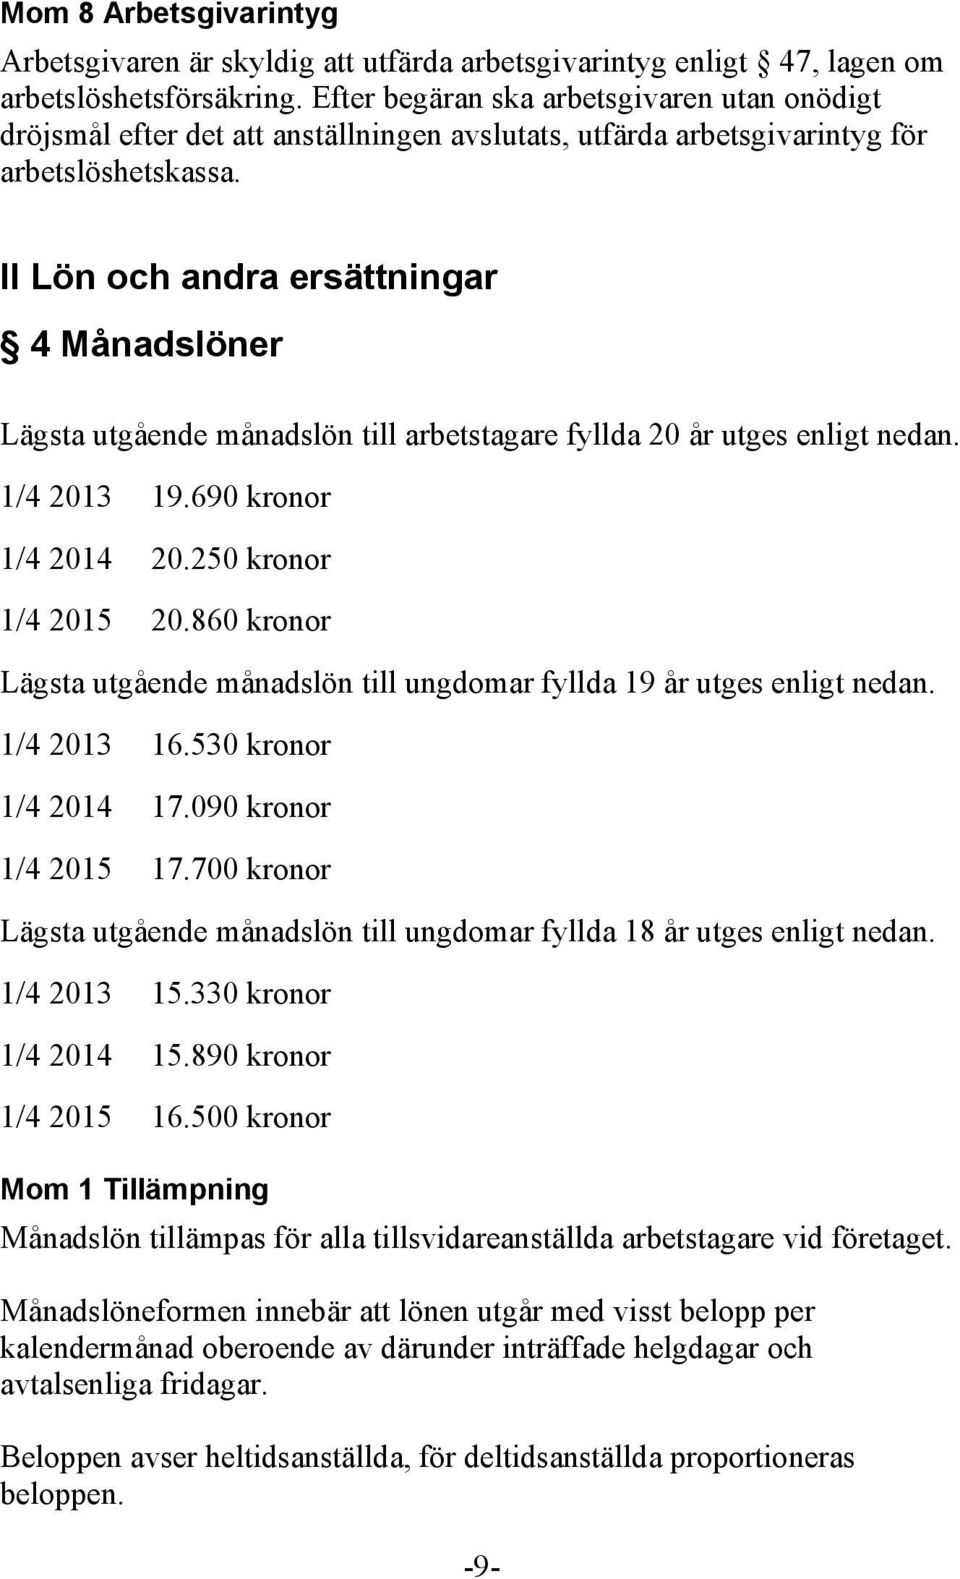 II Lön och andra ersättningar 4 Månadslöner Lägsta utgående månadslön till arbetstagare fyllda 20 år utges enligt nedan. 1/4 2013 19.690 kronor 1/4 2014 20.250 kronor 1/4 2015 20.